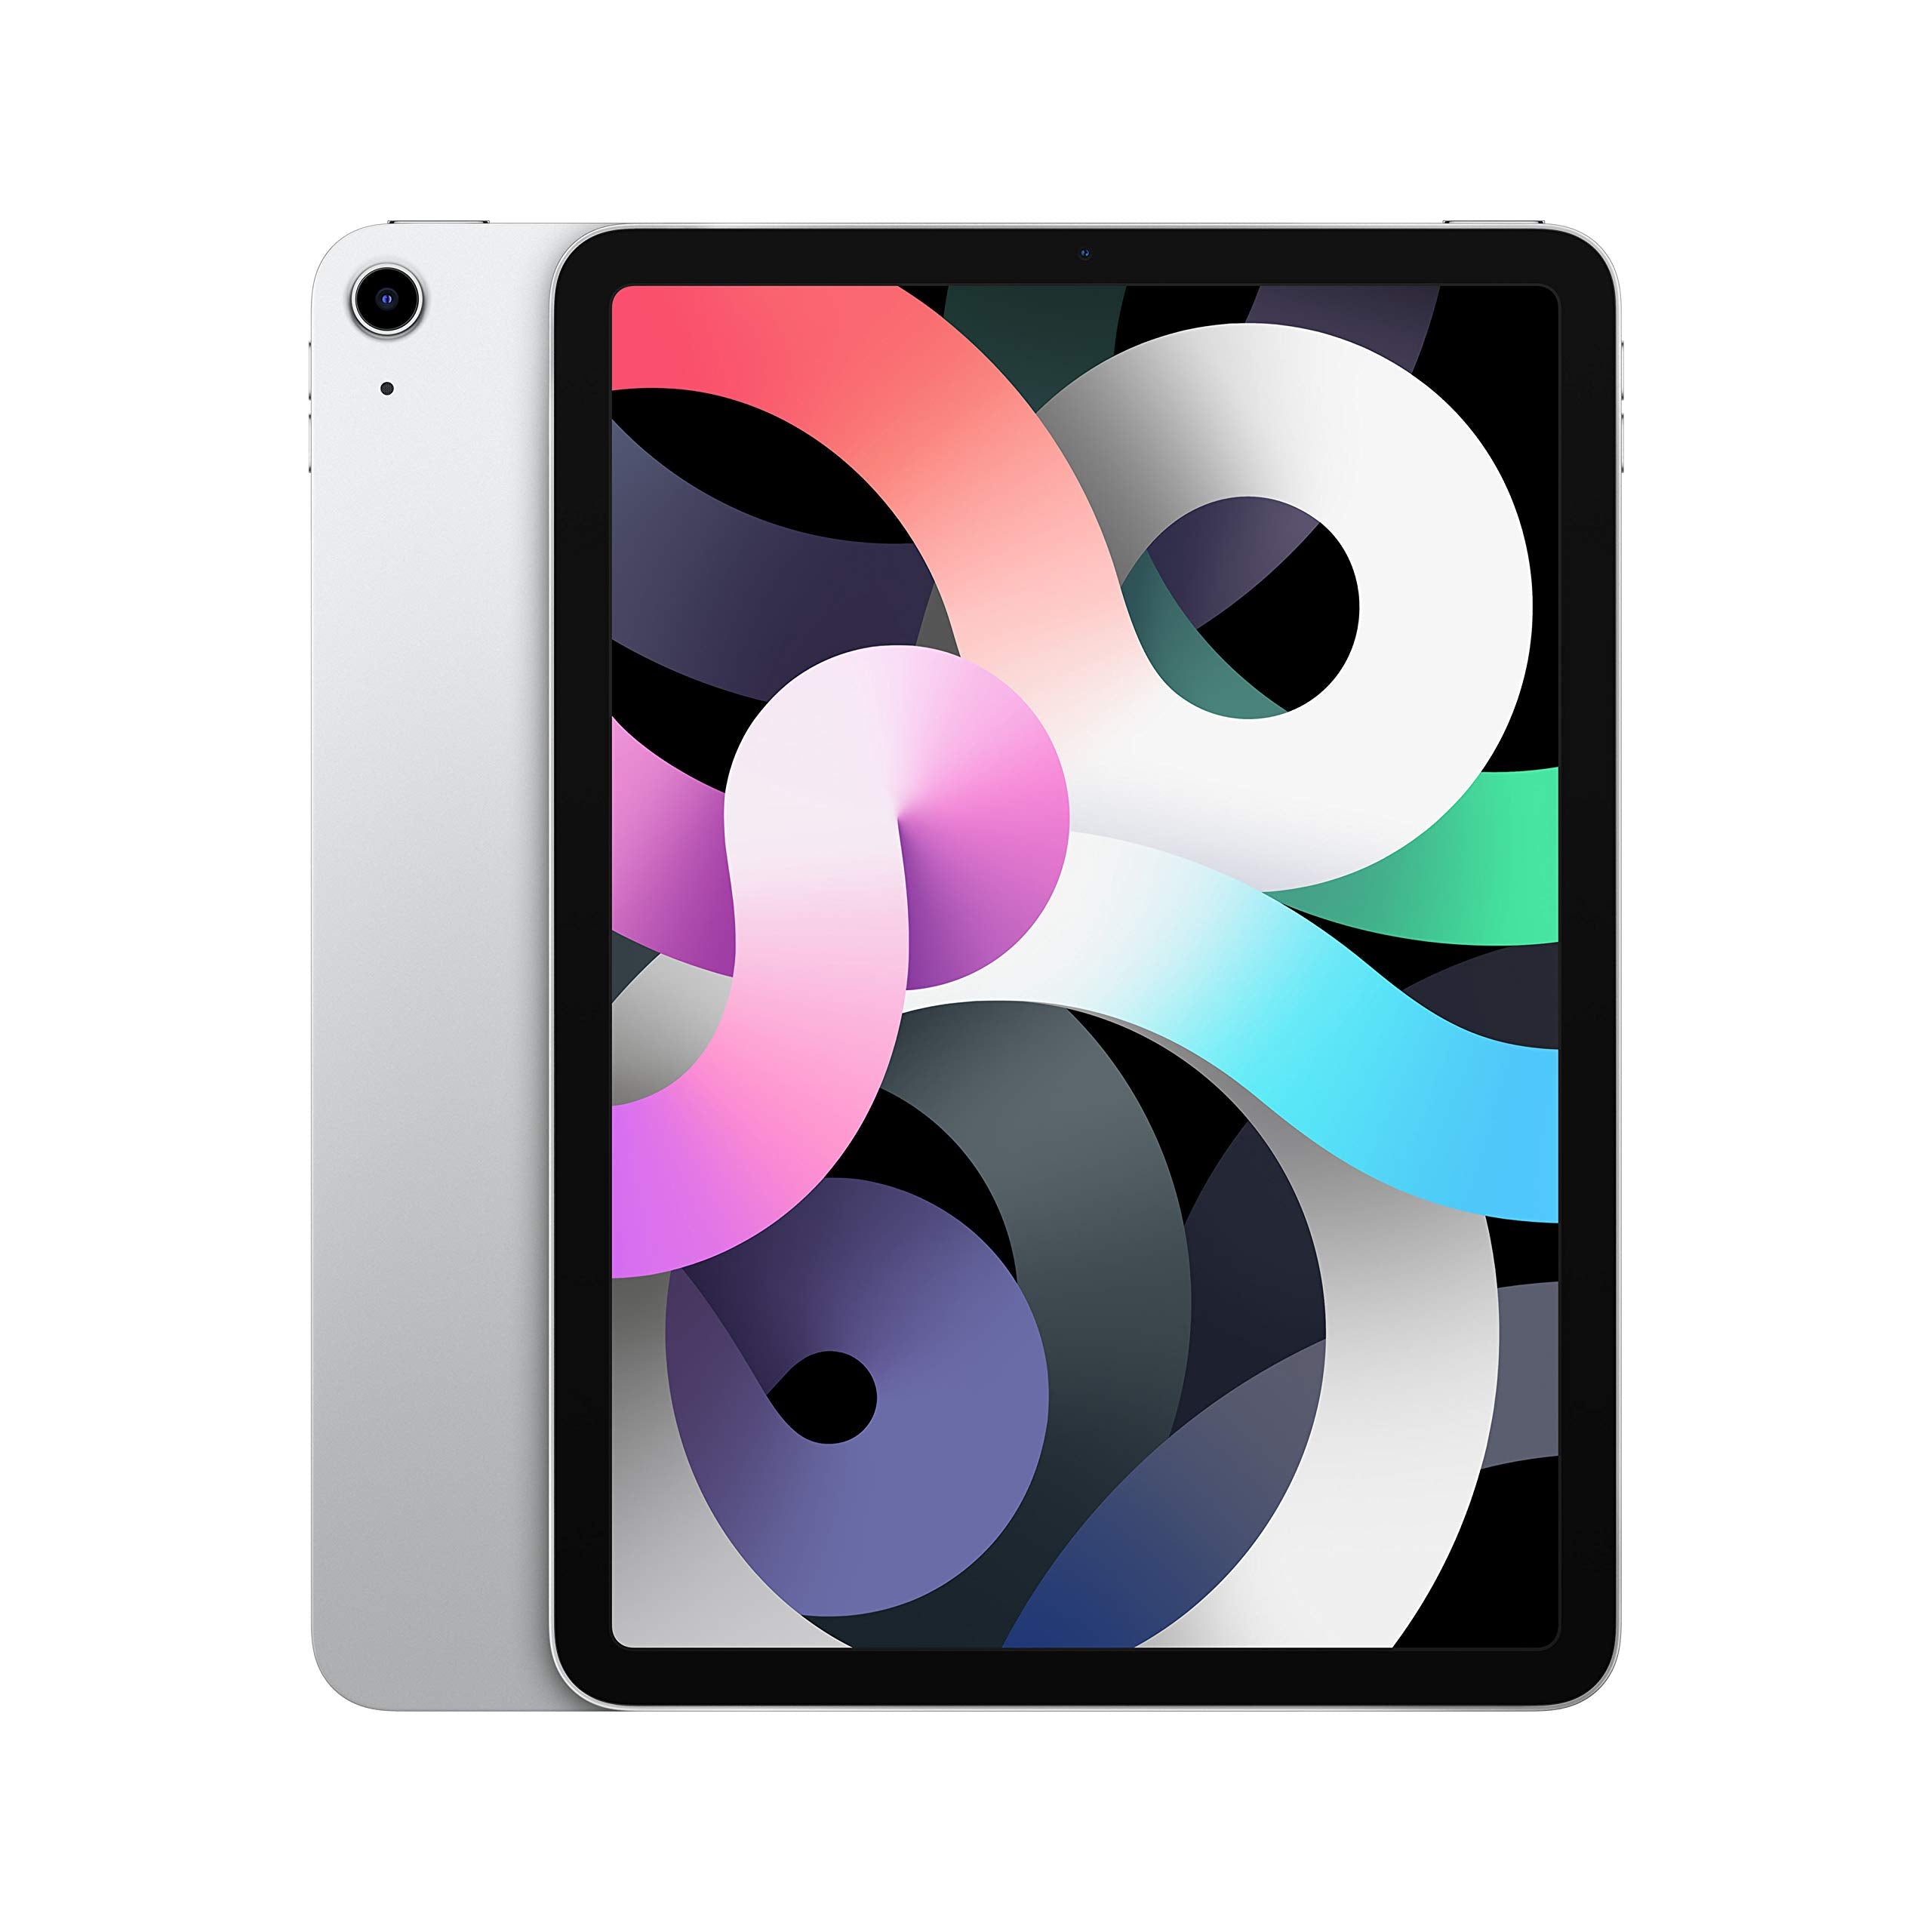 2020 Apple iPad Air (10.9-inch, Wi-Fi, 64GB) - Silver (4th Generation)